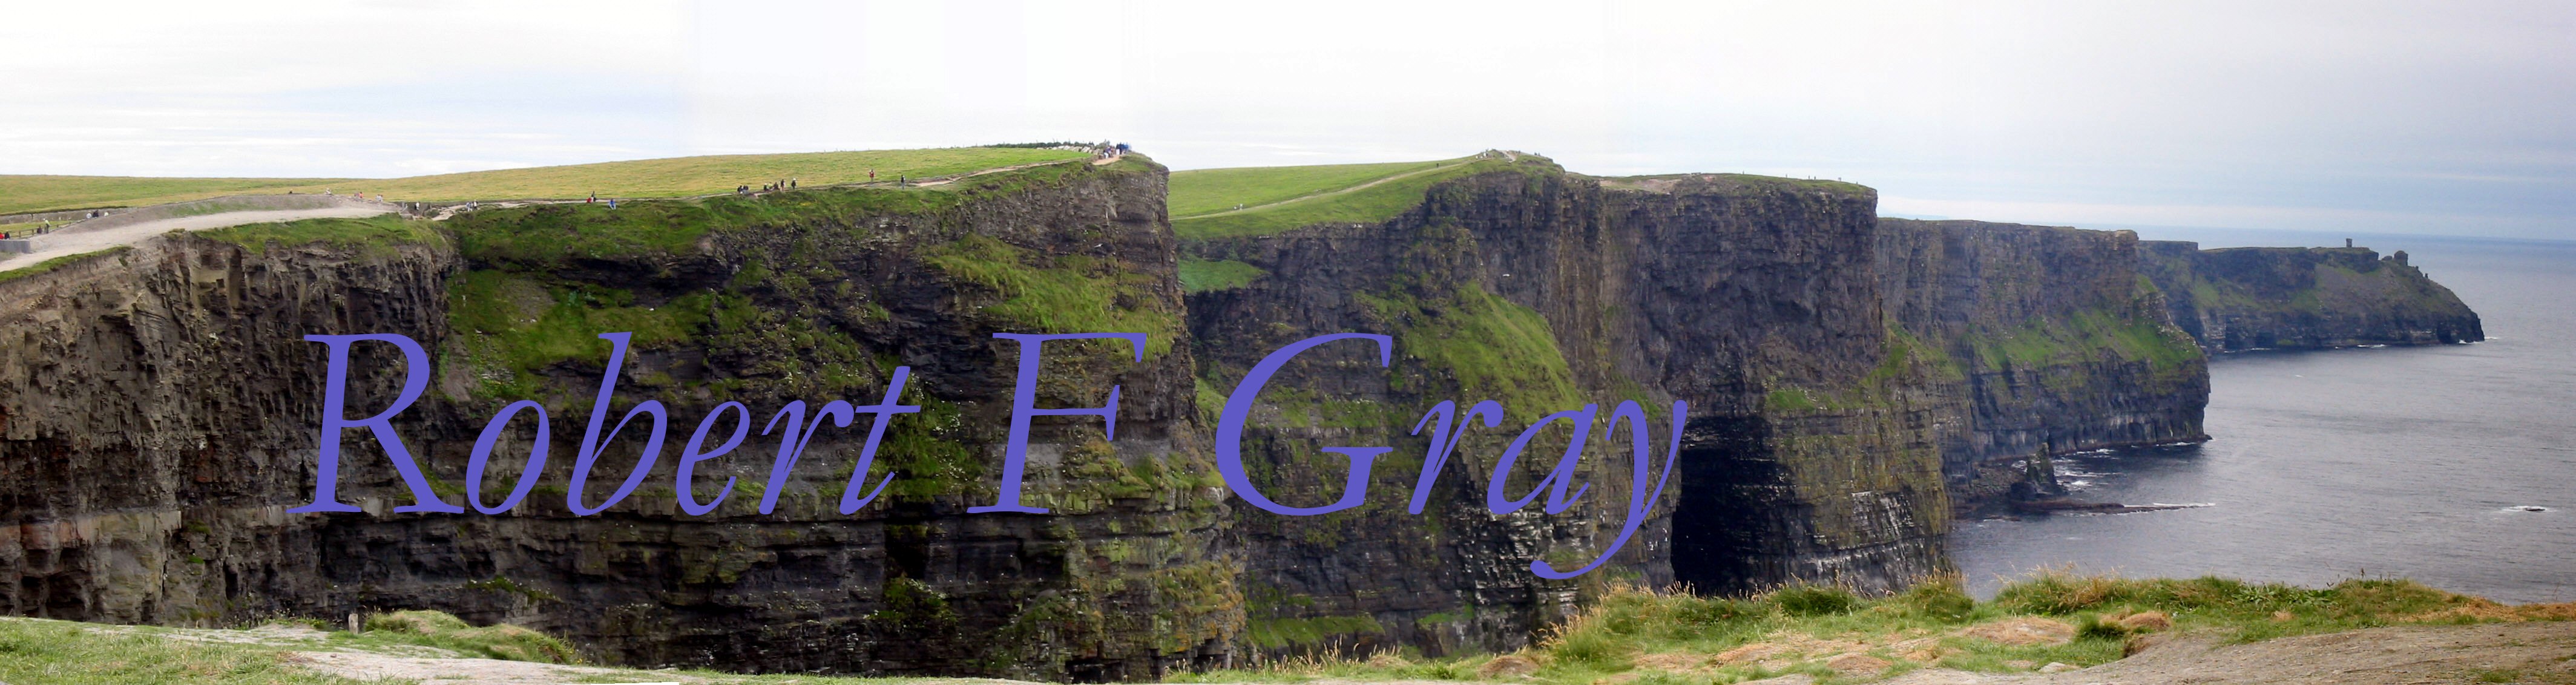 Robert F. Gray - Cliffs of Moher, Ireland